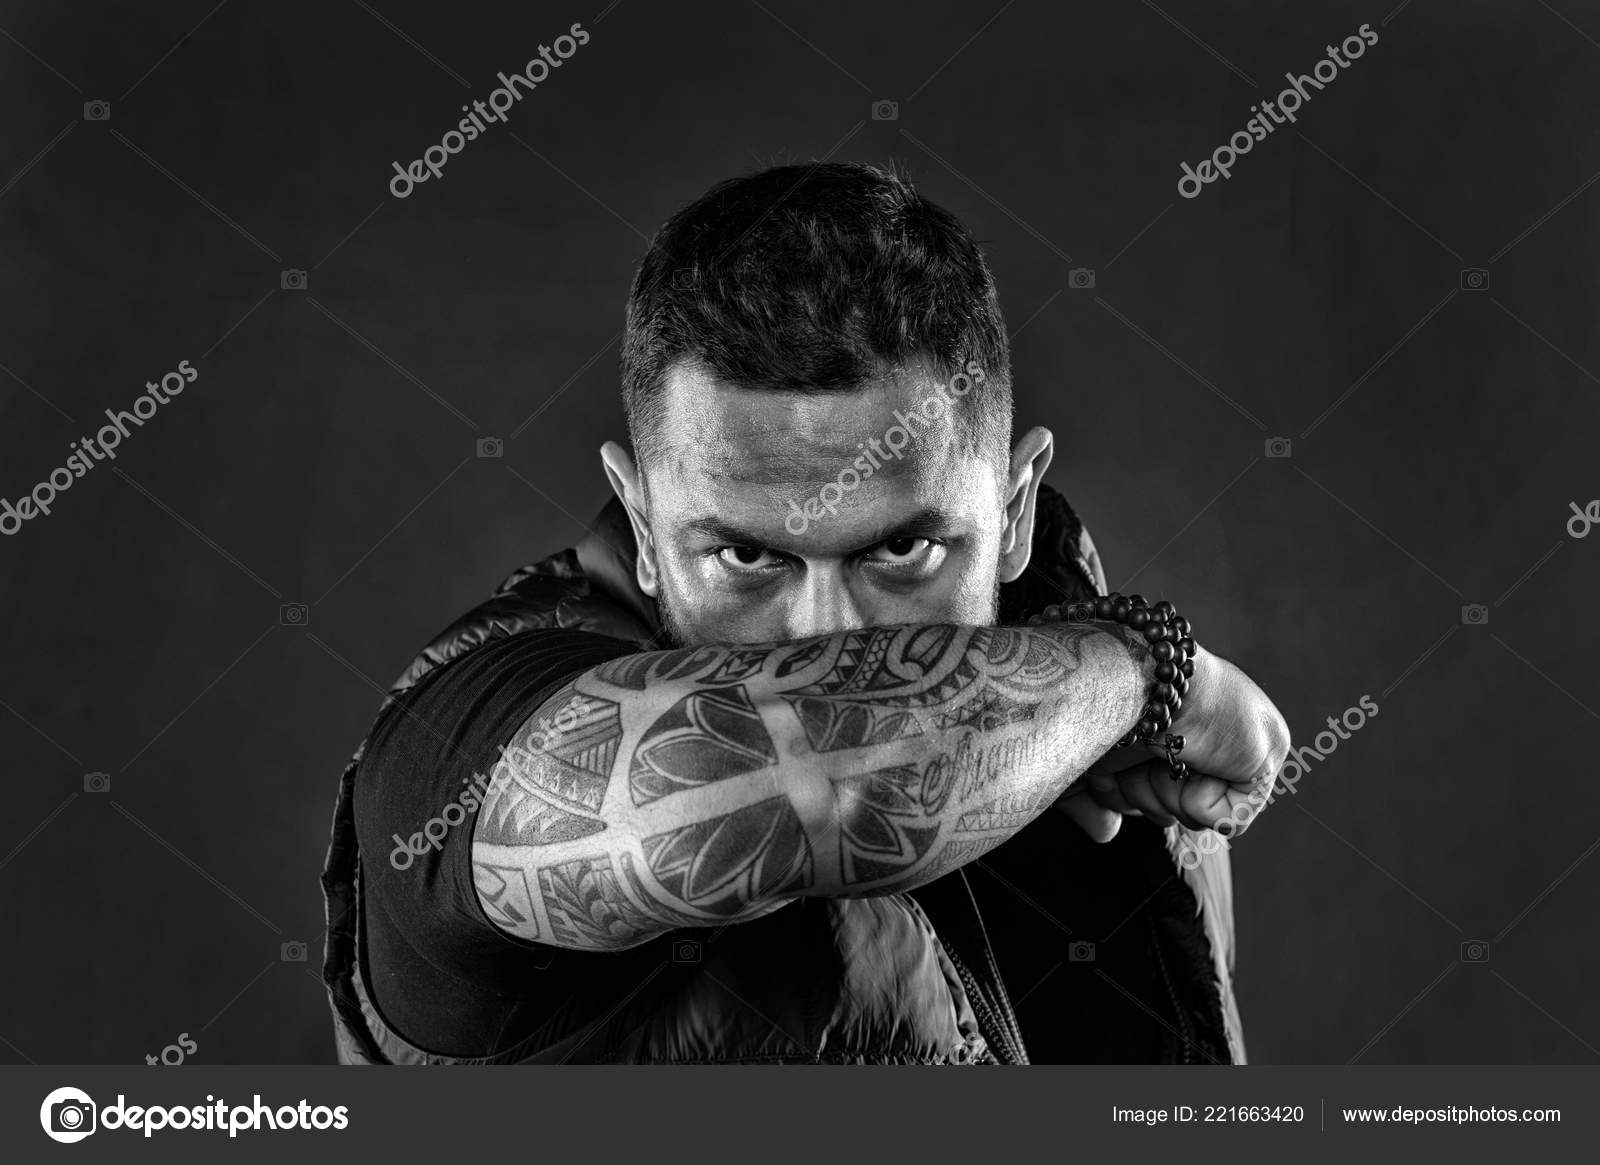 Tattooed Elbow Hide Male Face Dark Stock Photo 1508301041 | Shutterstock